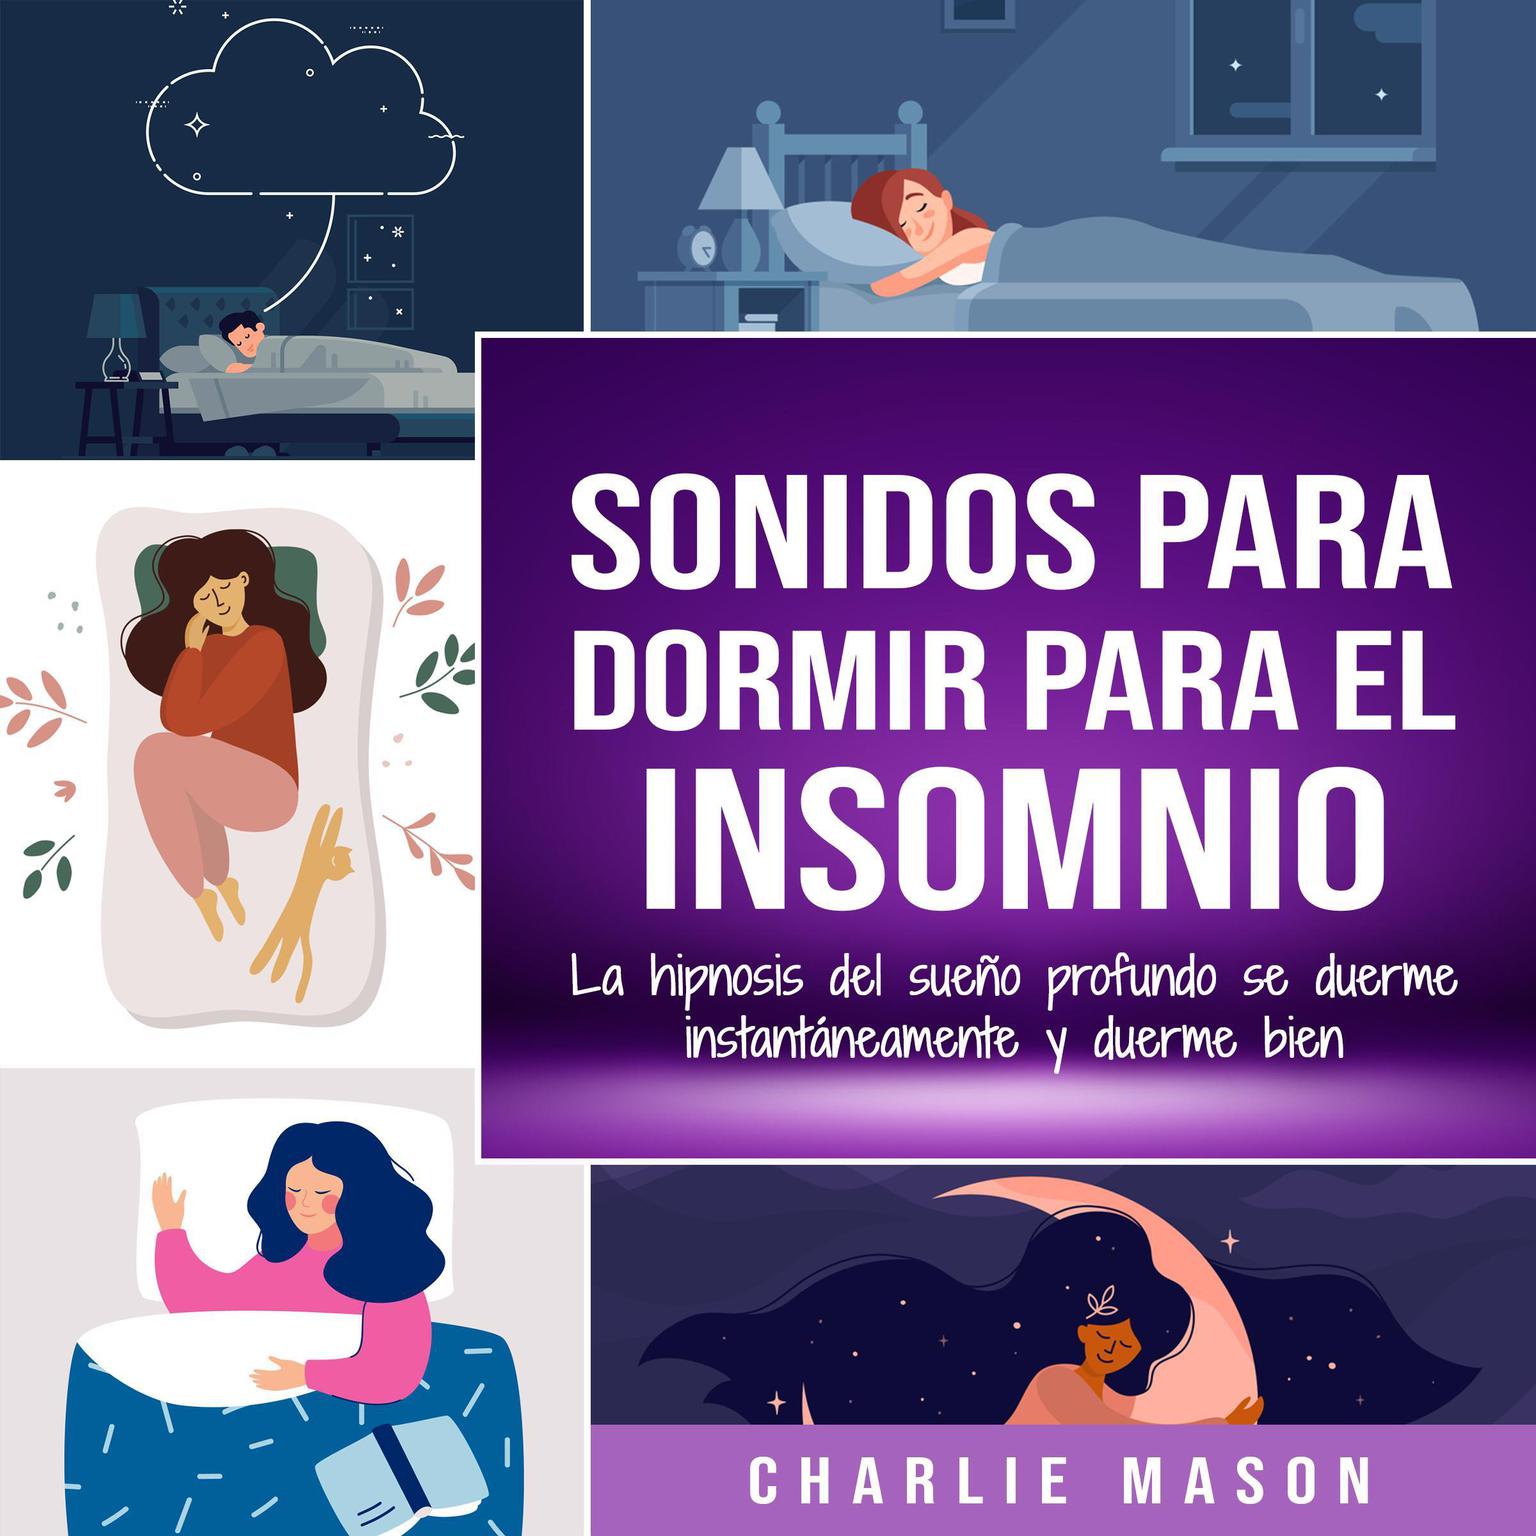 Sonidos para dormir para el insomnio: La hipnosis del sueño profundo se duerme instantáneamente y duerme bien Audiobook, by Charlie Mason